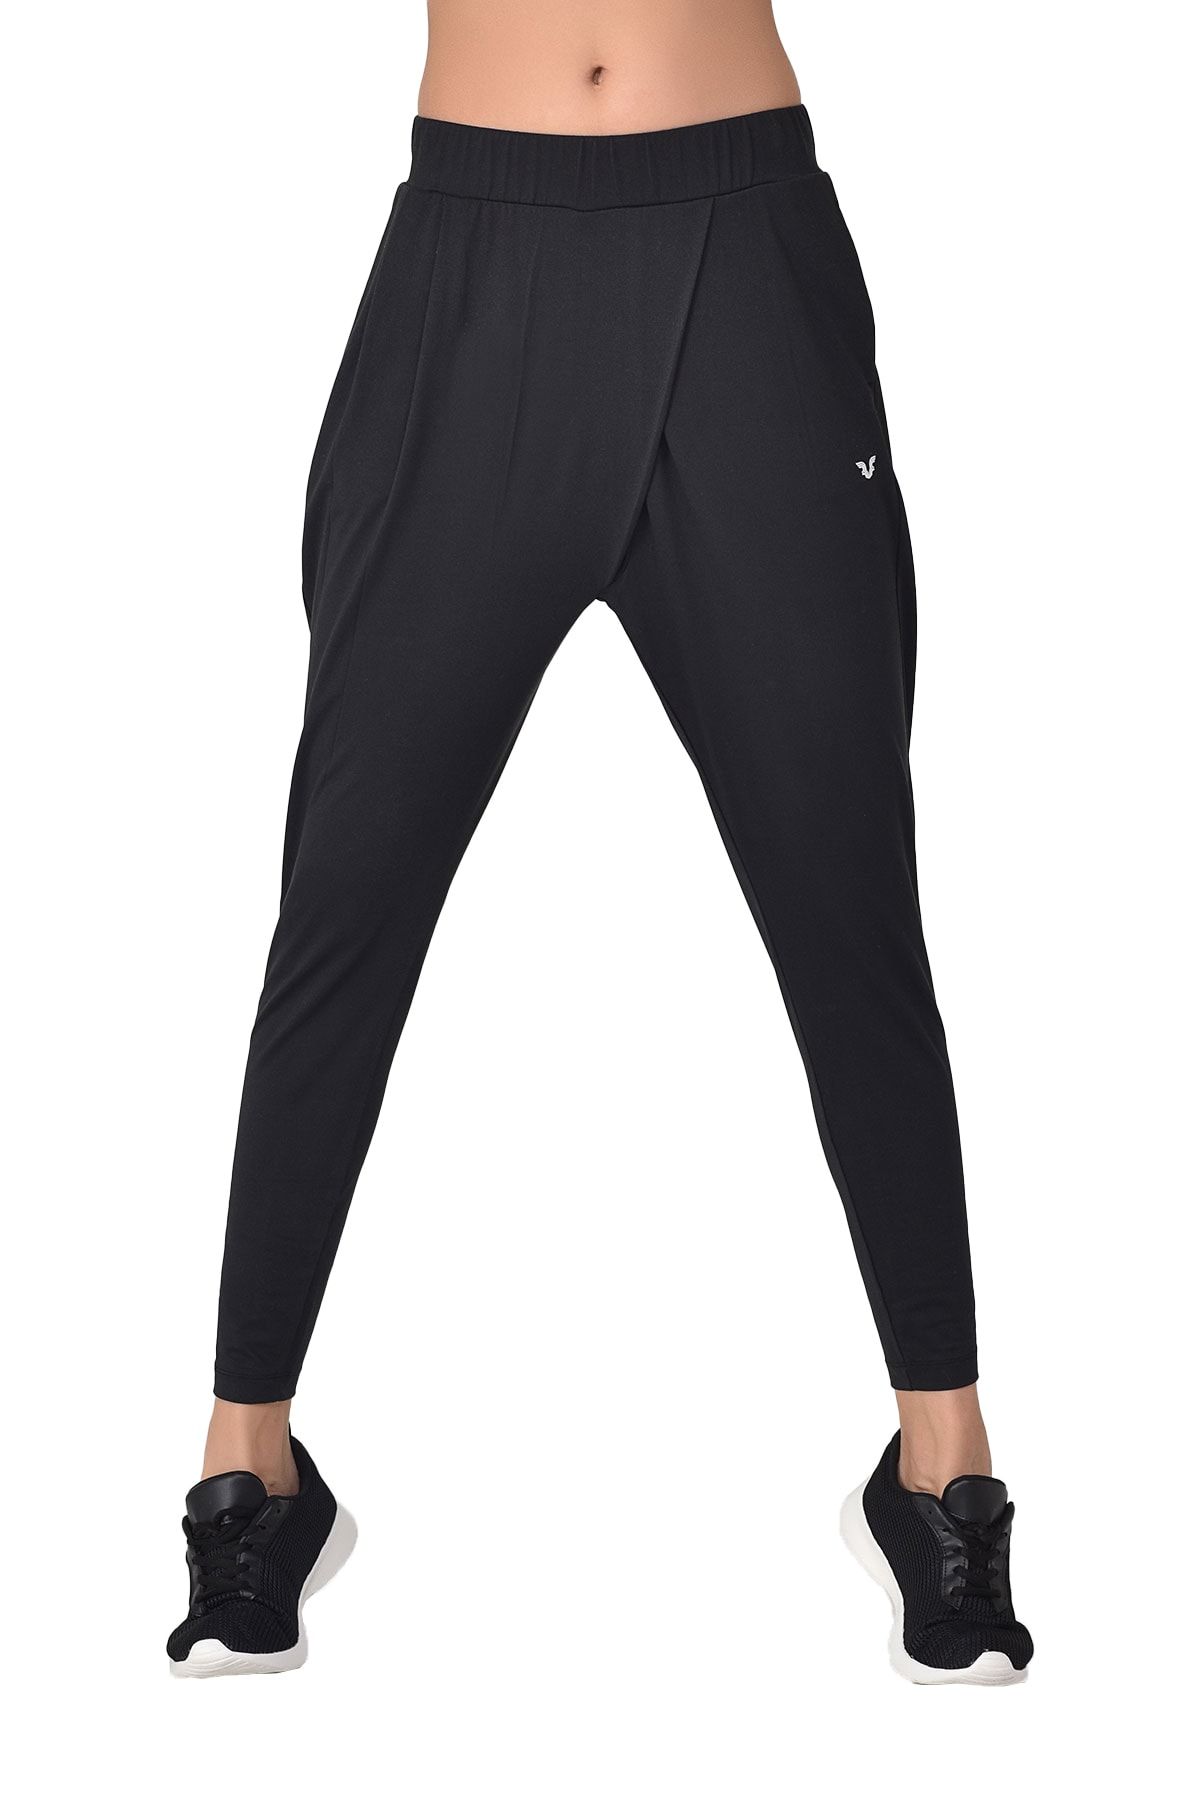 bilcee Kadın Siyah Yüksek Bel Cepli Spor ve Günlük Dar Paça Şalvar Jogger Yoga Pantolonu Eşofman Altı 8101